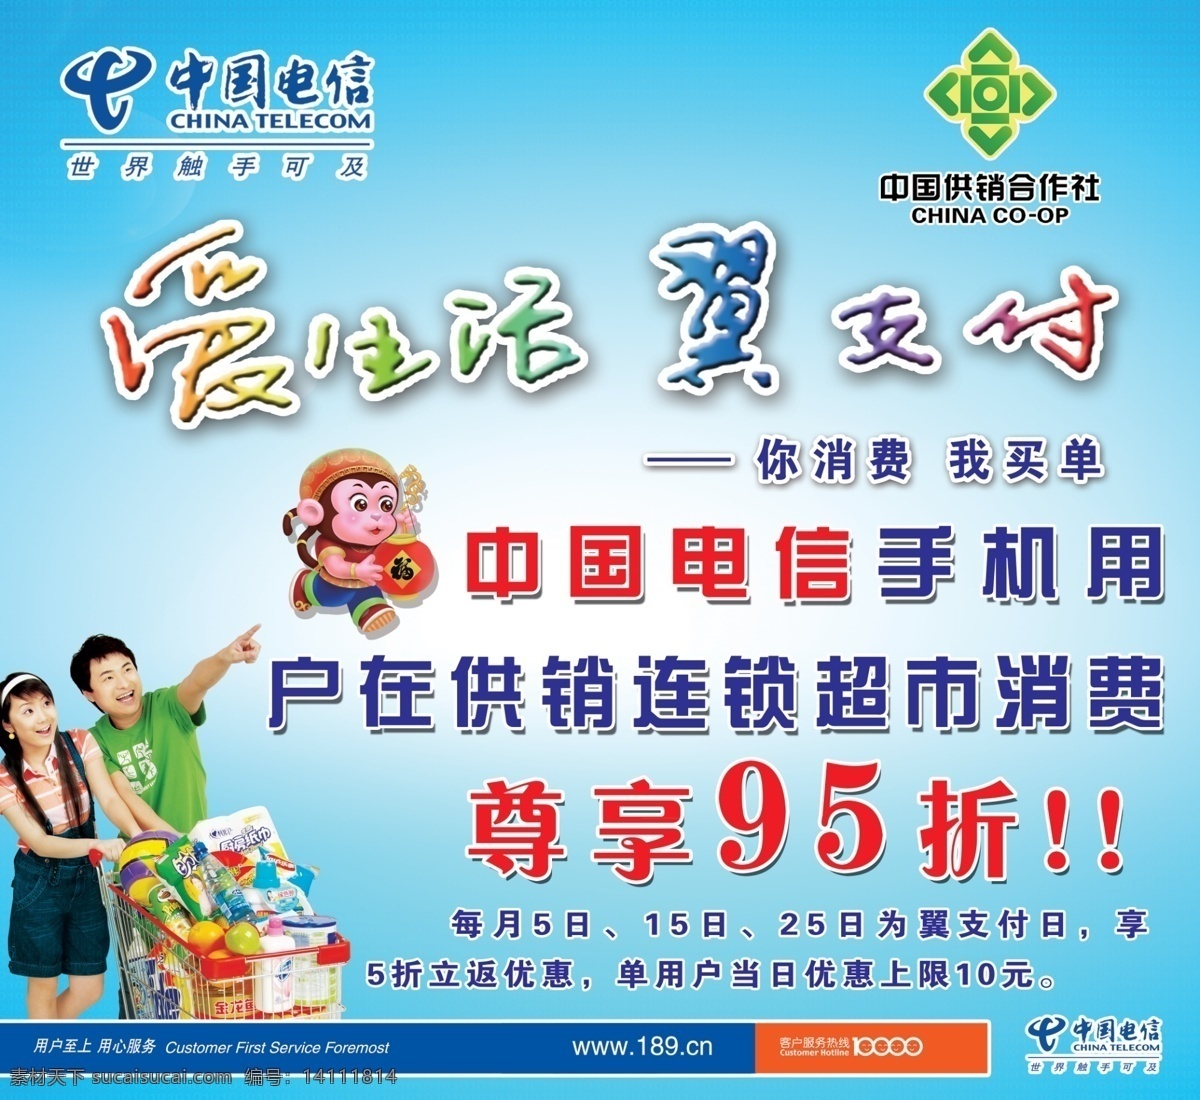 中国电信 手机 翼支付 尊享 连锁超市 供销 供销超市 爱生活翼支付